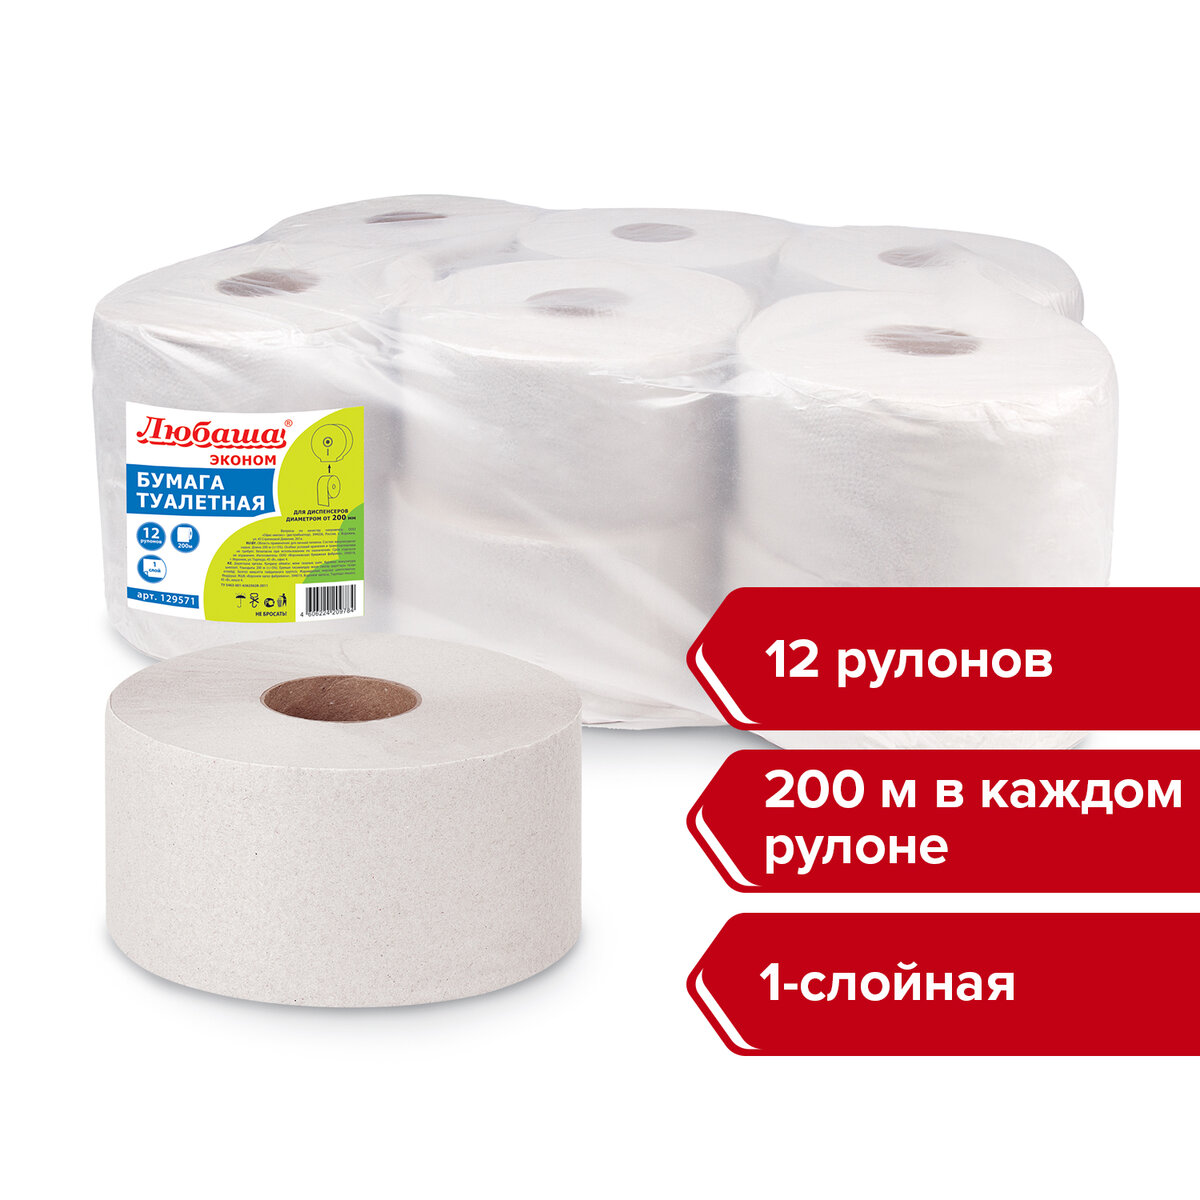 Туалетная бумага Любаша для диспенсера 200м серая 1-слойная 12 рулонов Система Т2 - фото 6